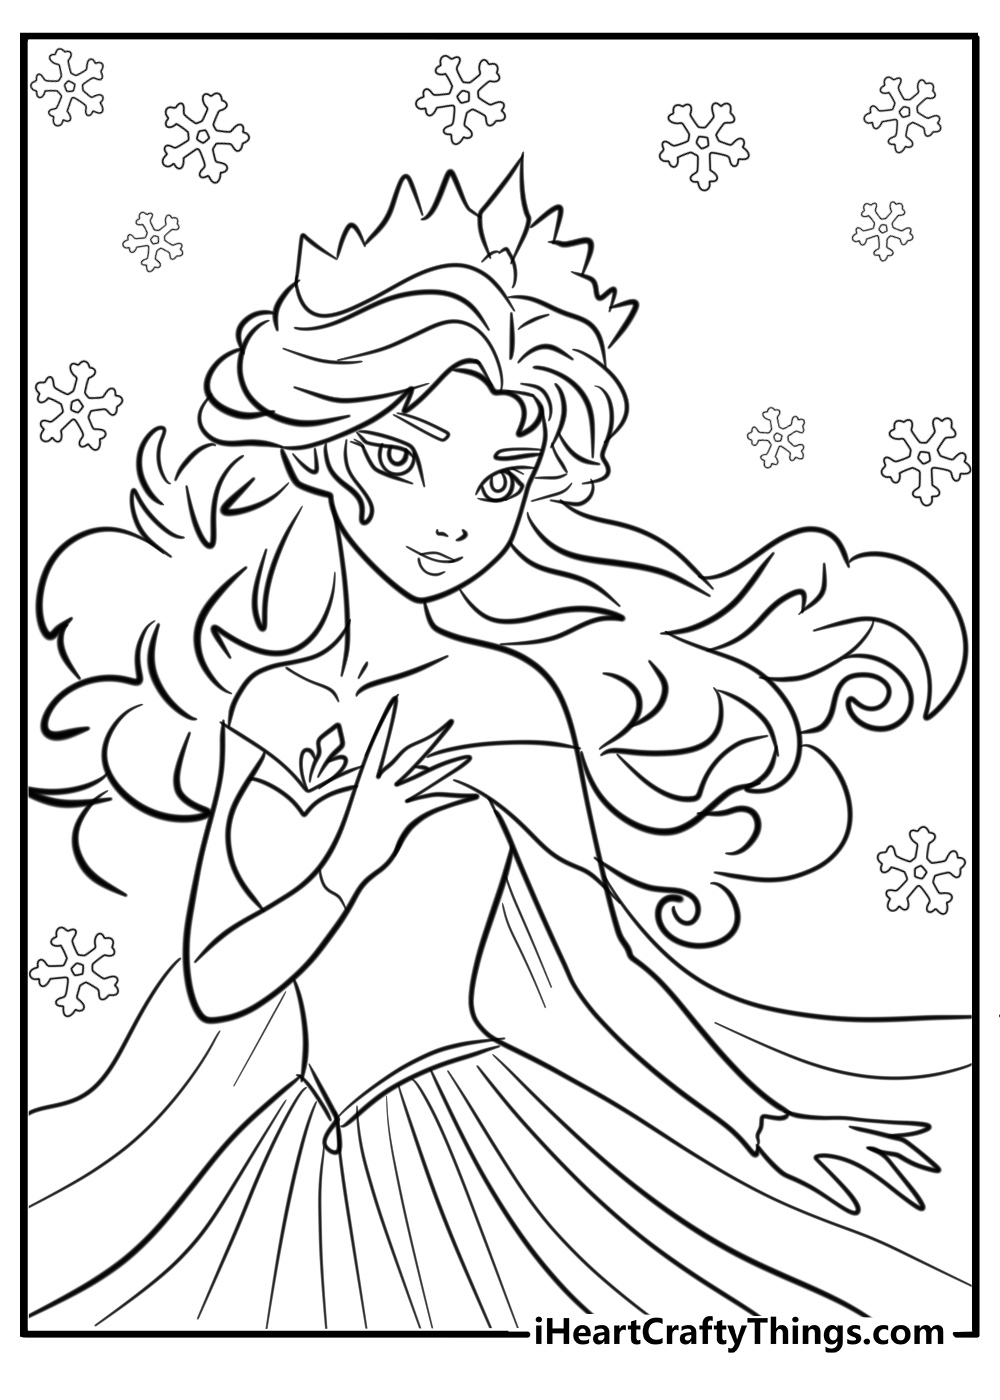 Frozen princess coloring pages